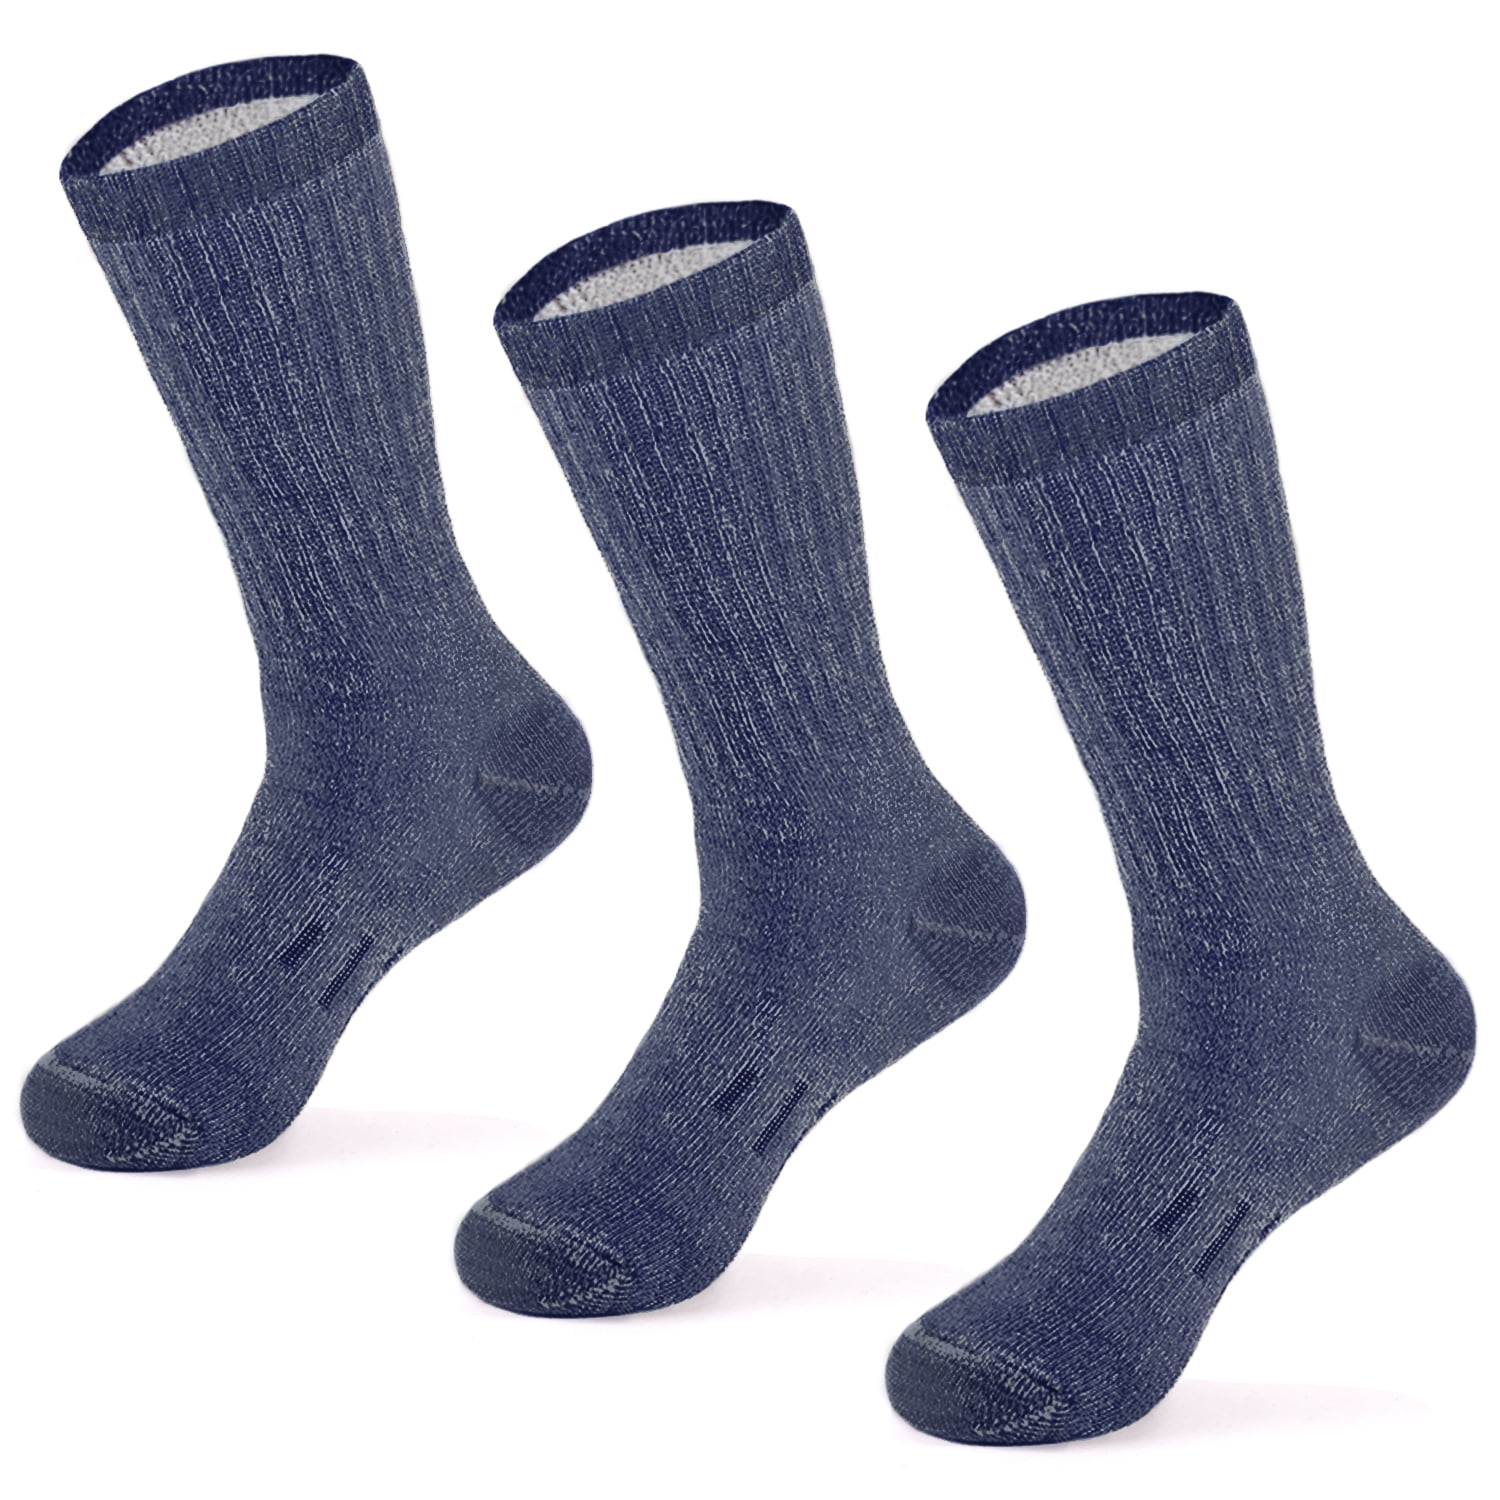 MERIWOOL - MERIWOOL 3 Pairs Merino Wool Blend Socks - Choose Your Size ...